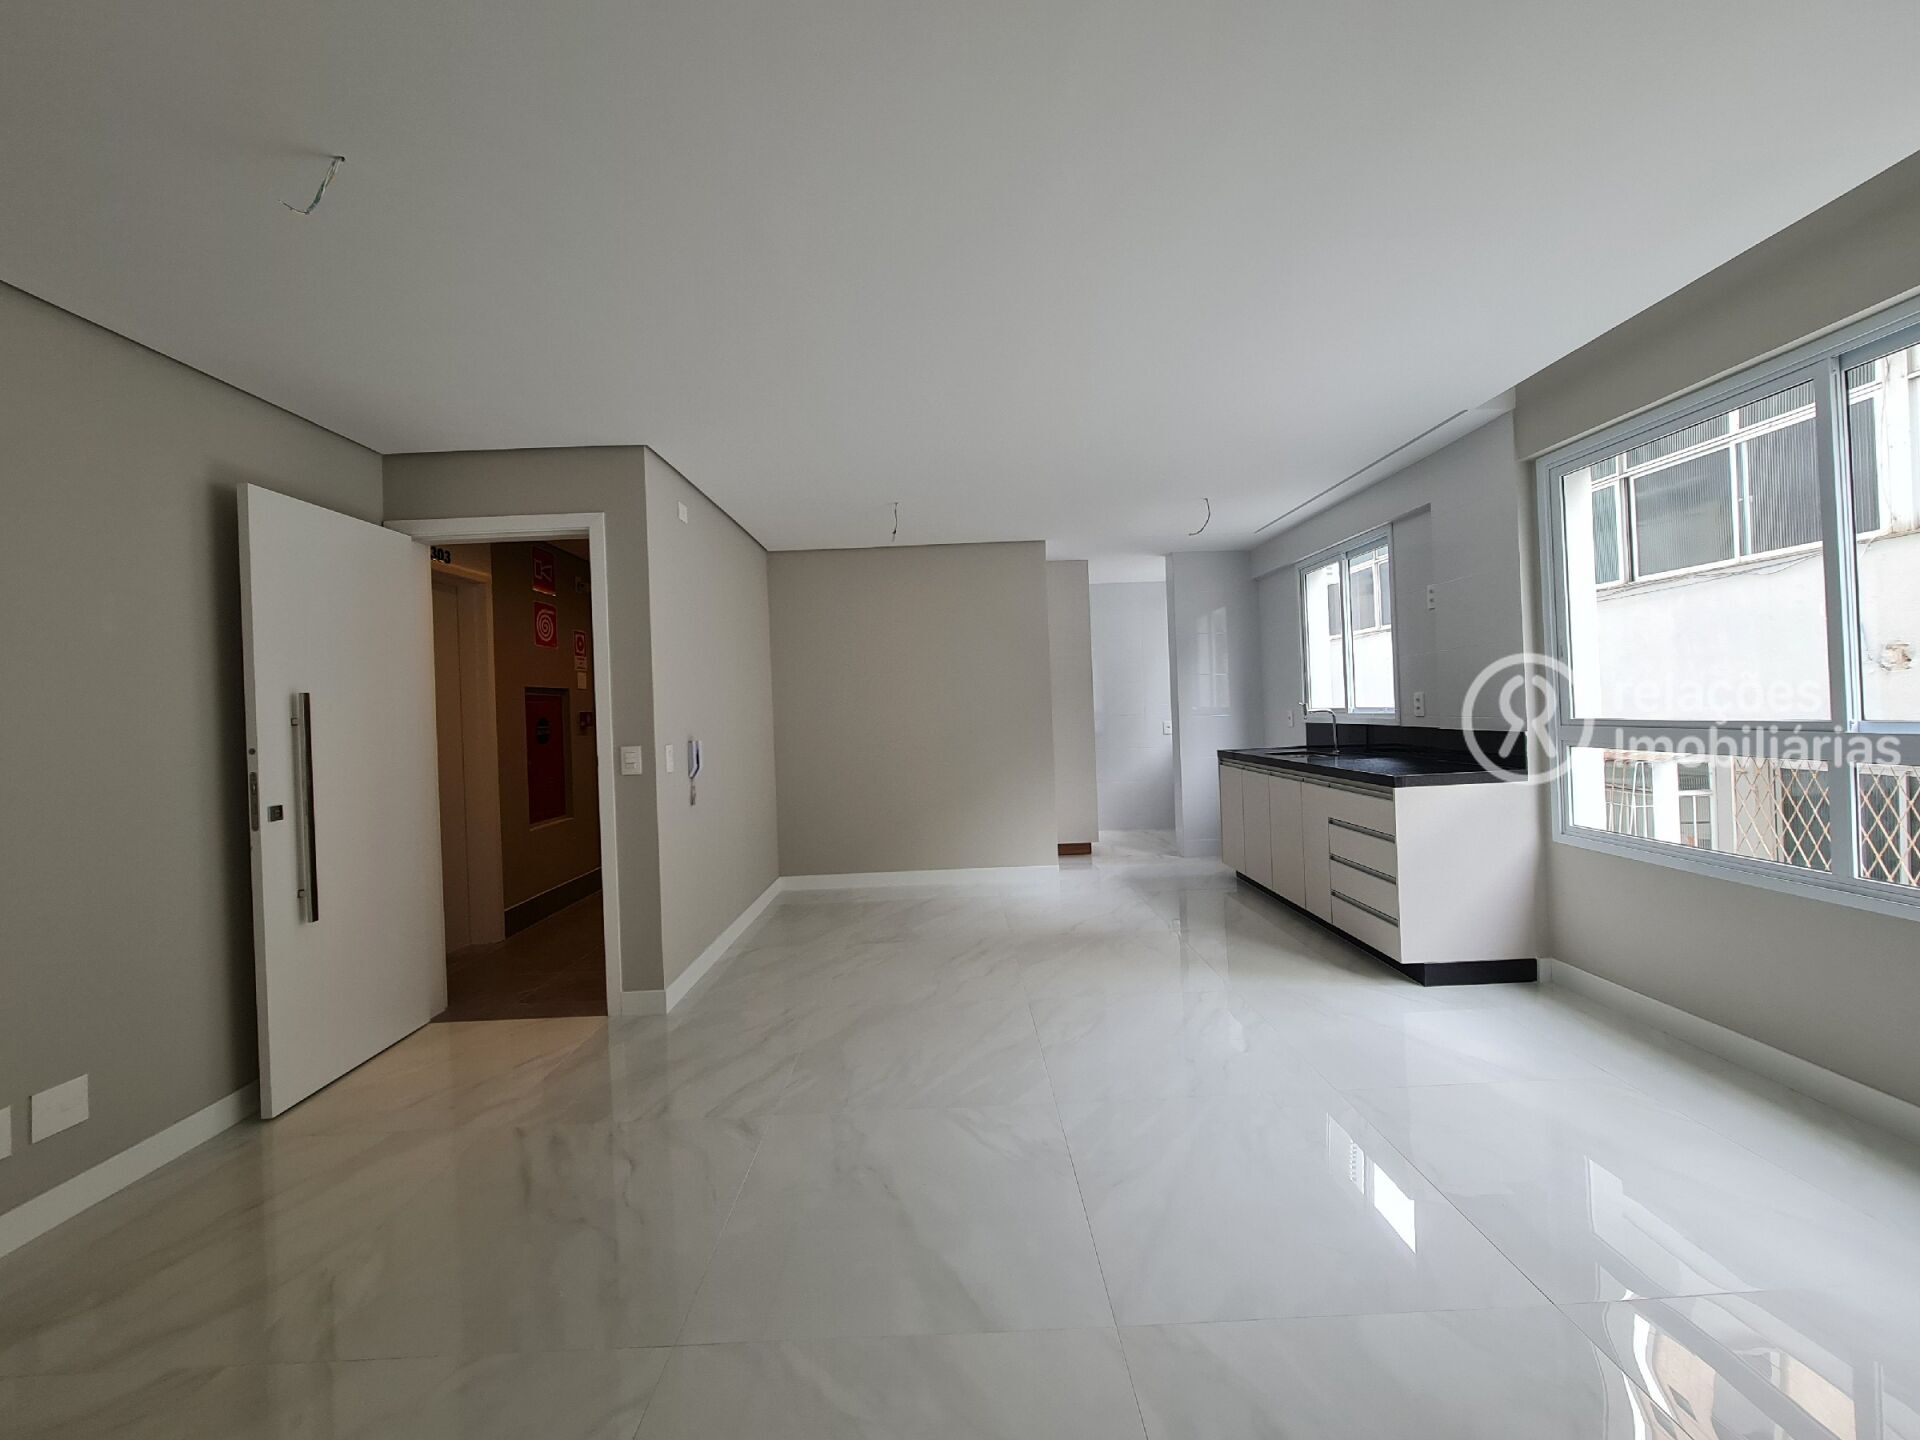 Apartamento, 3 quartos, 116 m² - Foto 3